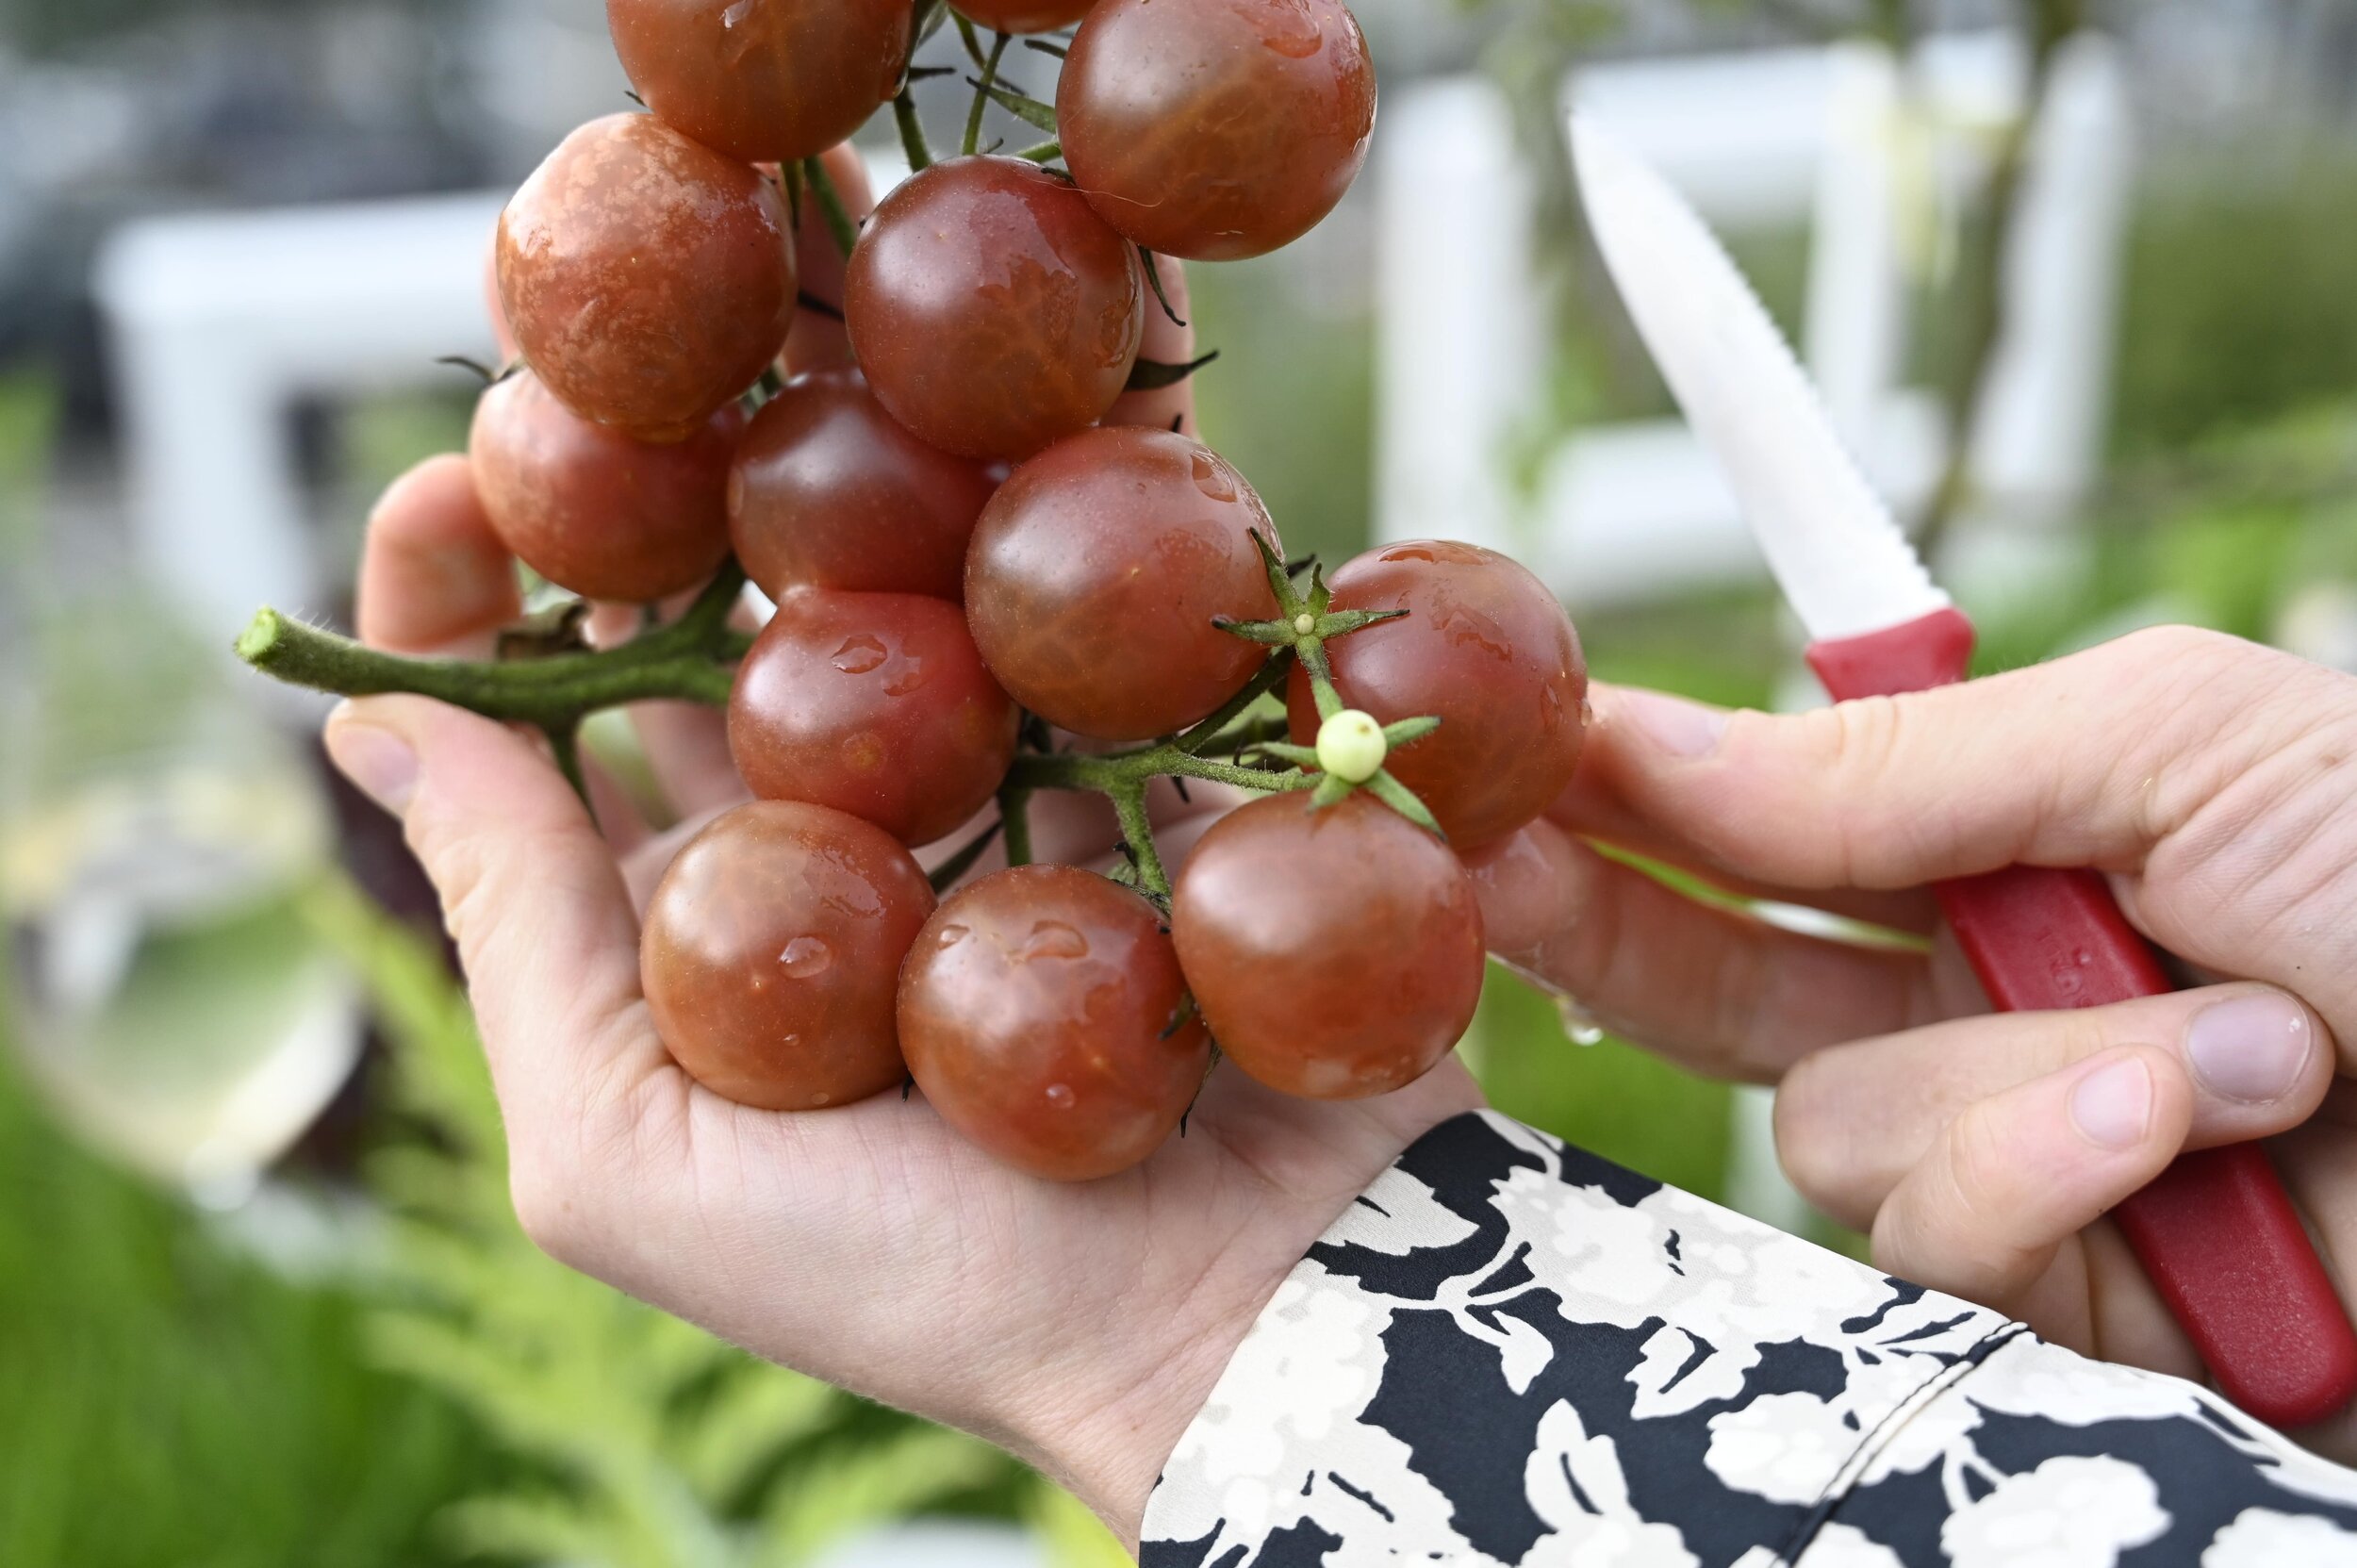  Auch im Sugo verarbeitet: Die Black-Cherry-Tomate erinnert an Kirschen und hat einen süsslichen Geschmack.  